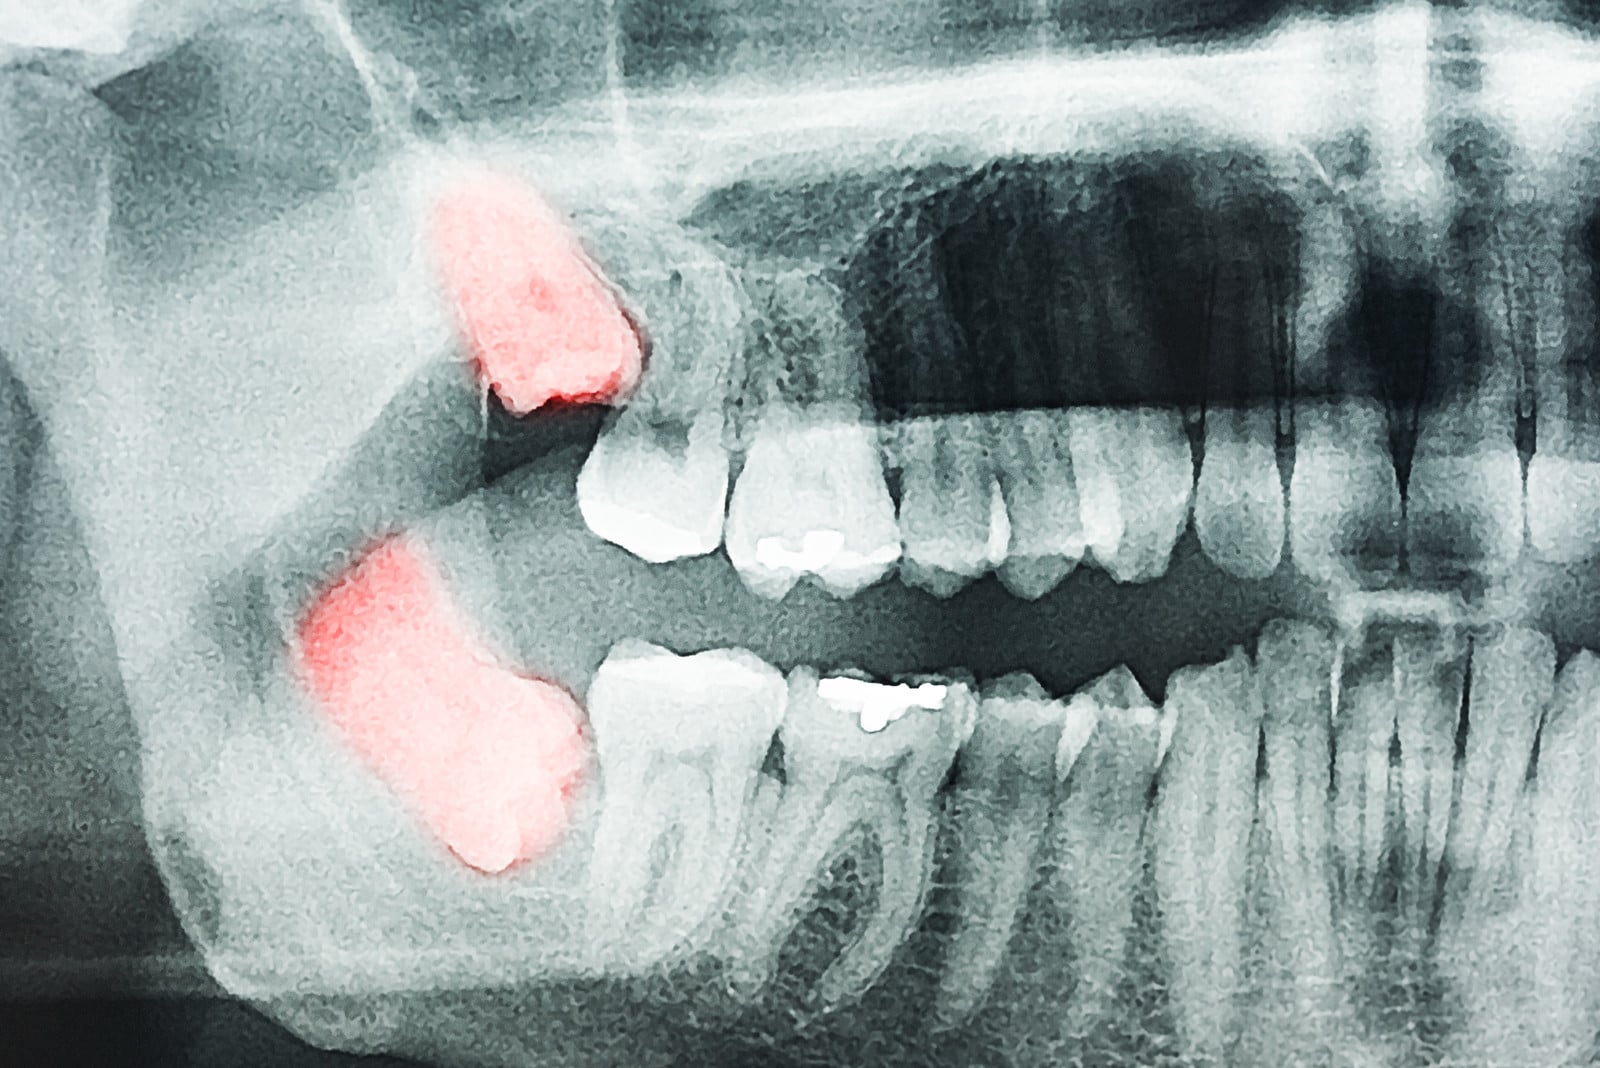 тризмия после удаления зуба мудрости является распространённым симптомом